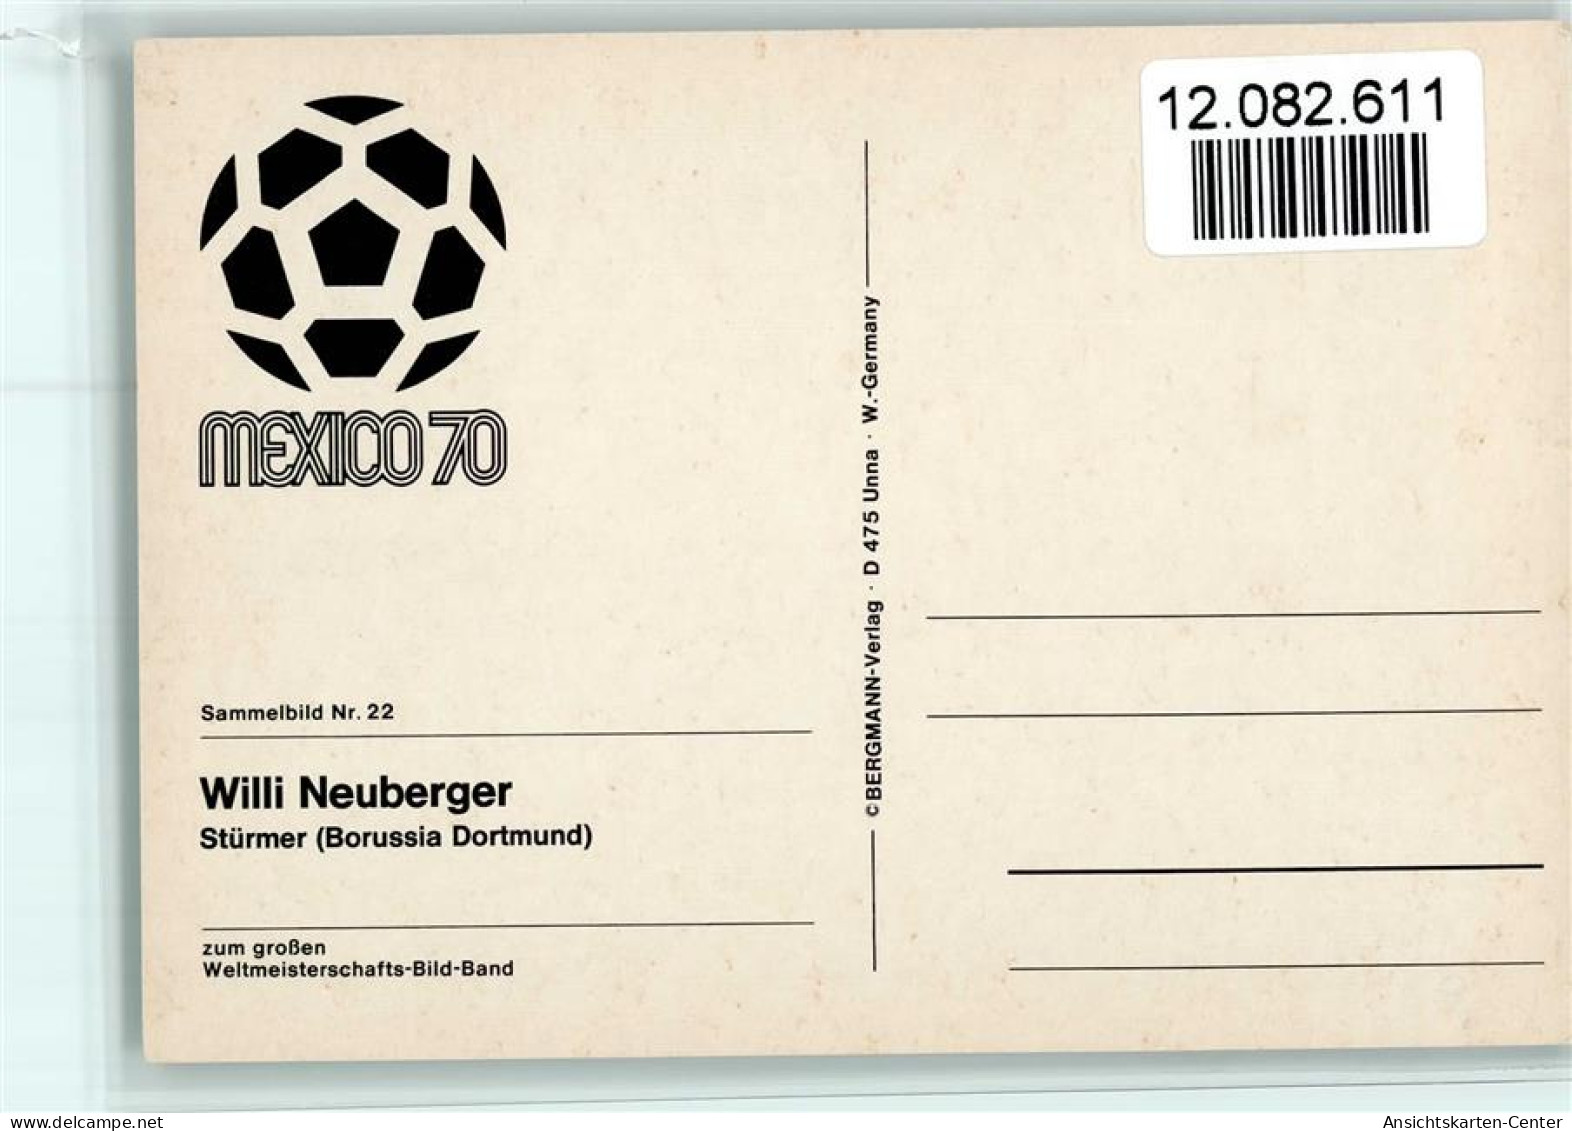 12082611 - Fussball (Prominente) Bergmann Sammelbild Nr. - Football